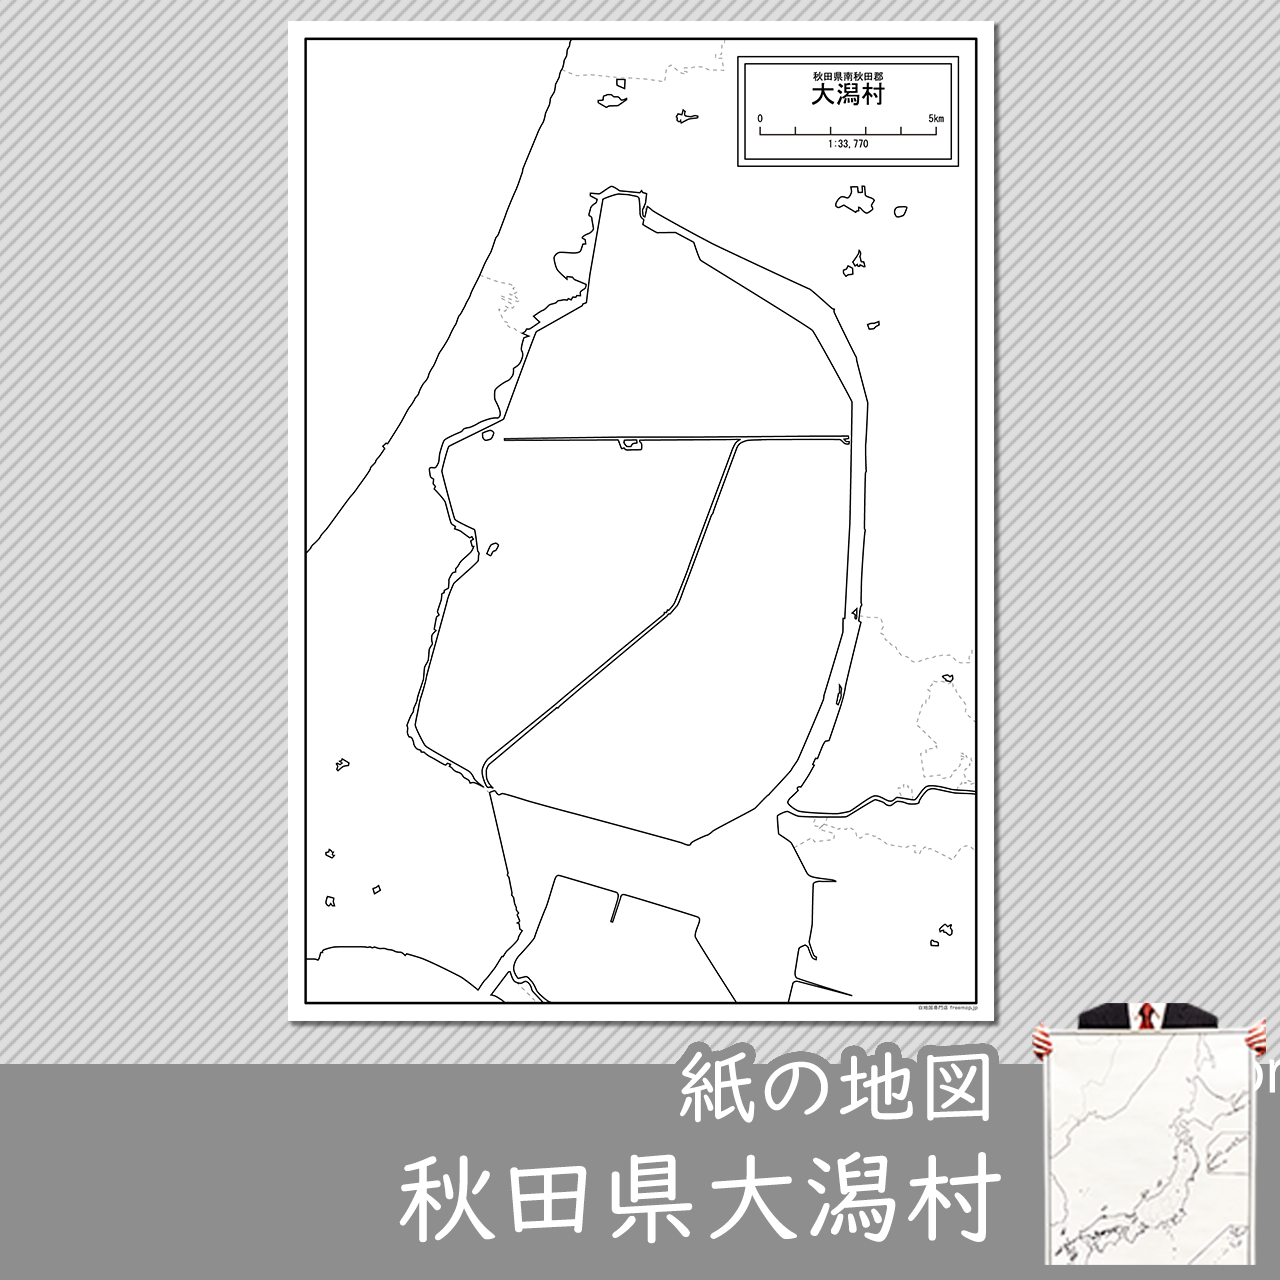 大潟村の紙の白地図のサムネイル